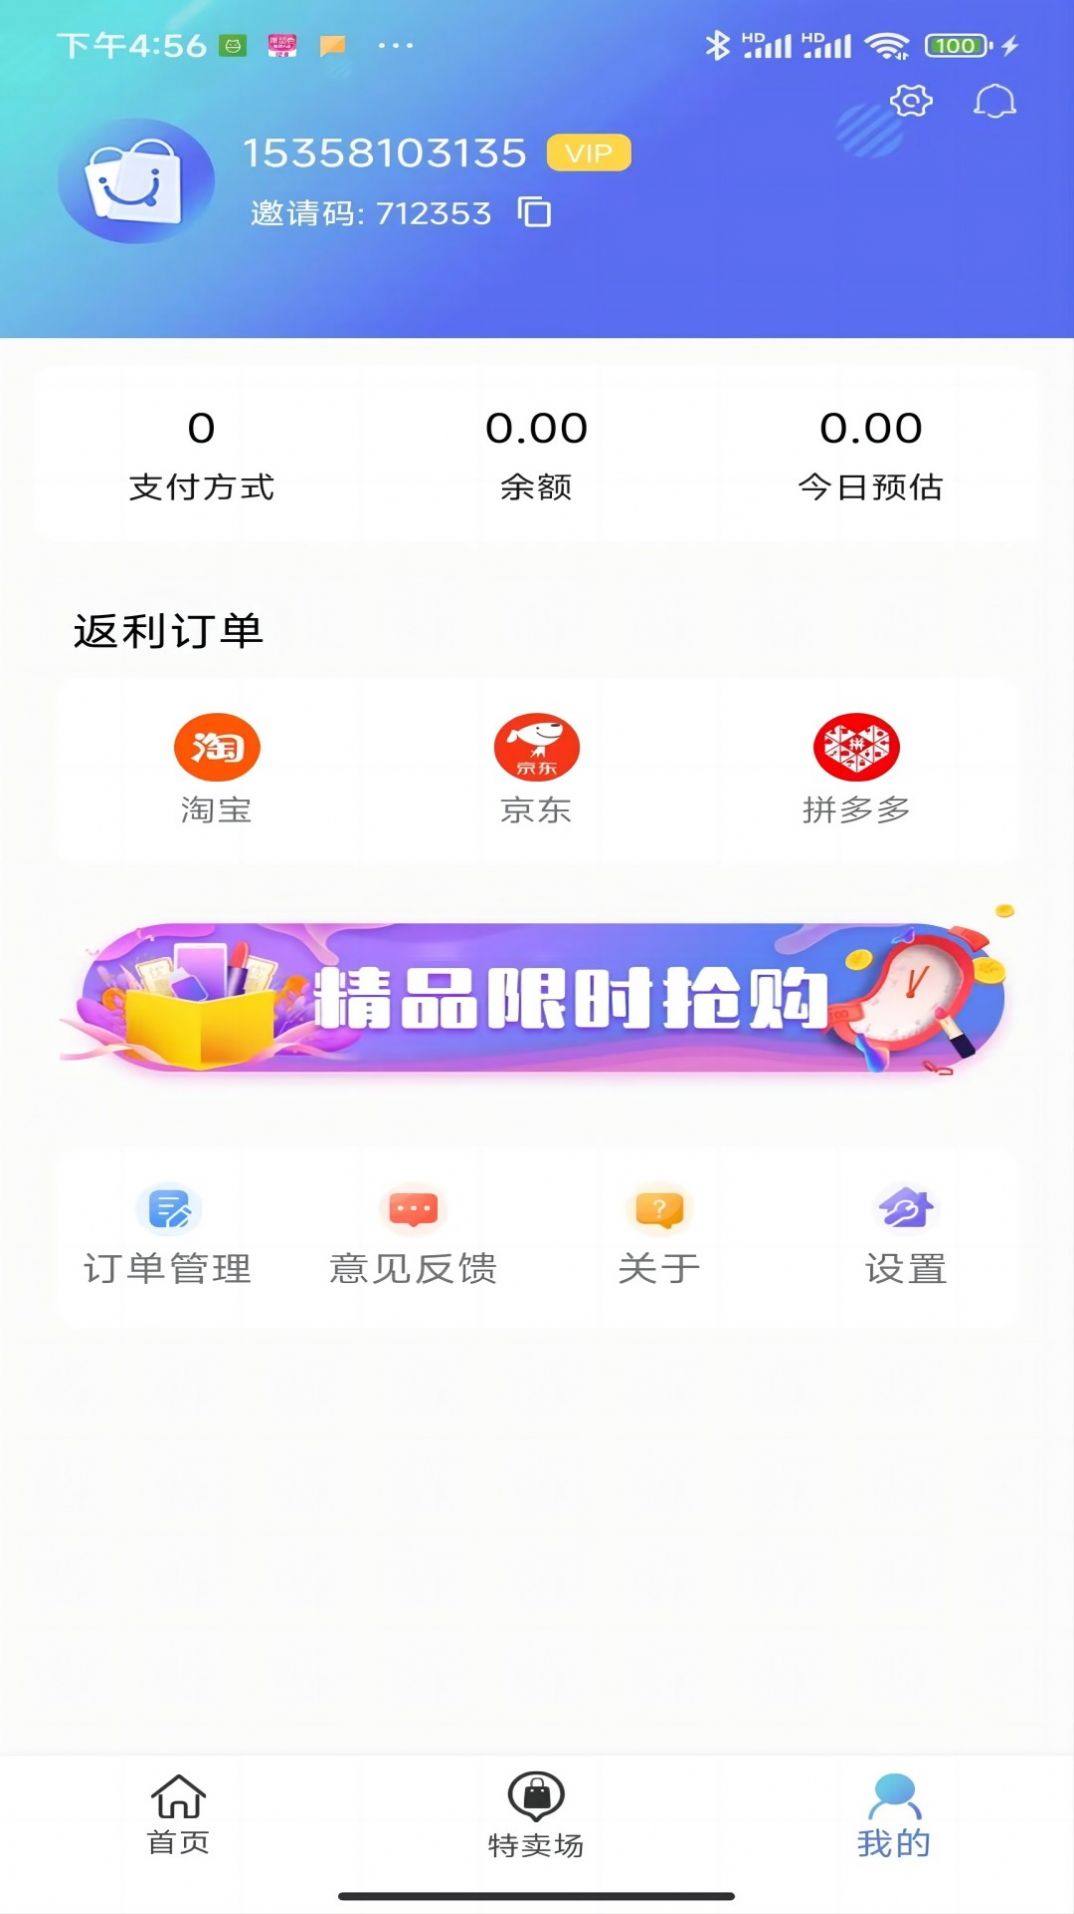 奇惠乐乐购app最新版下载图片1